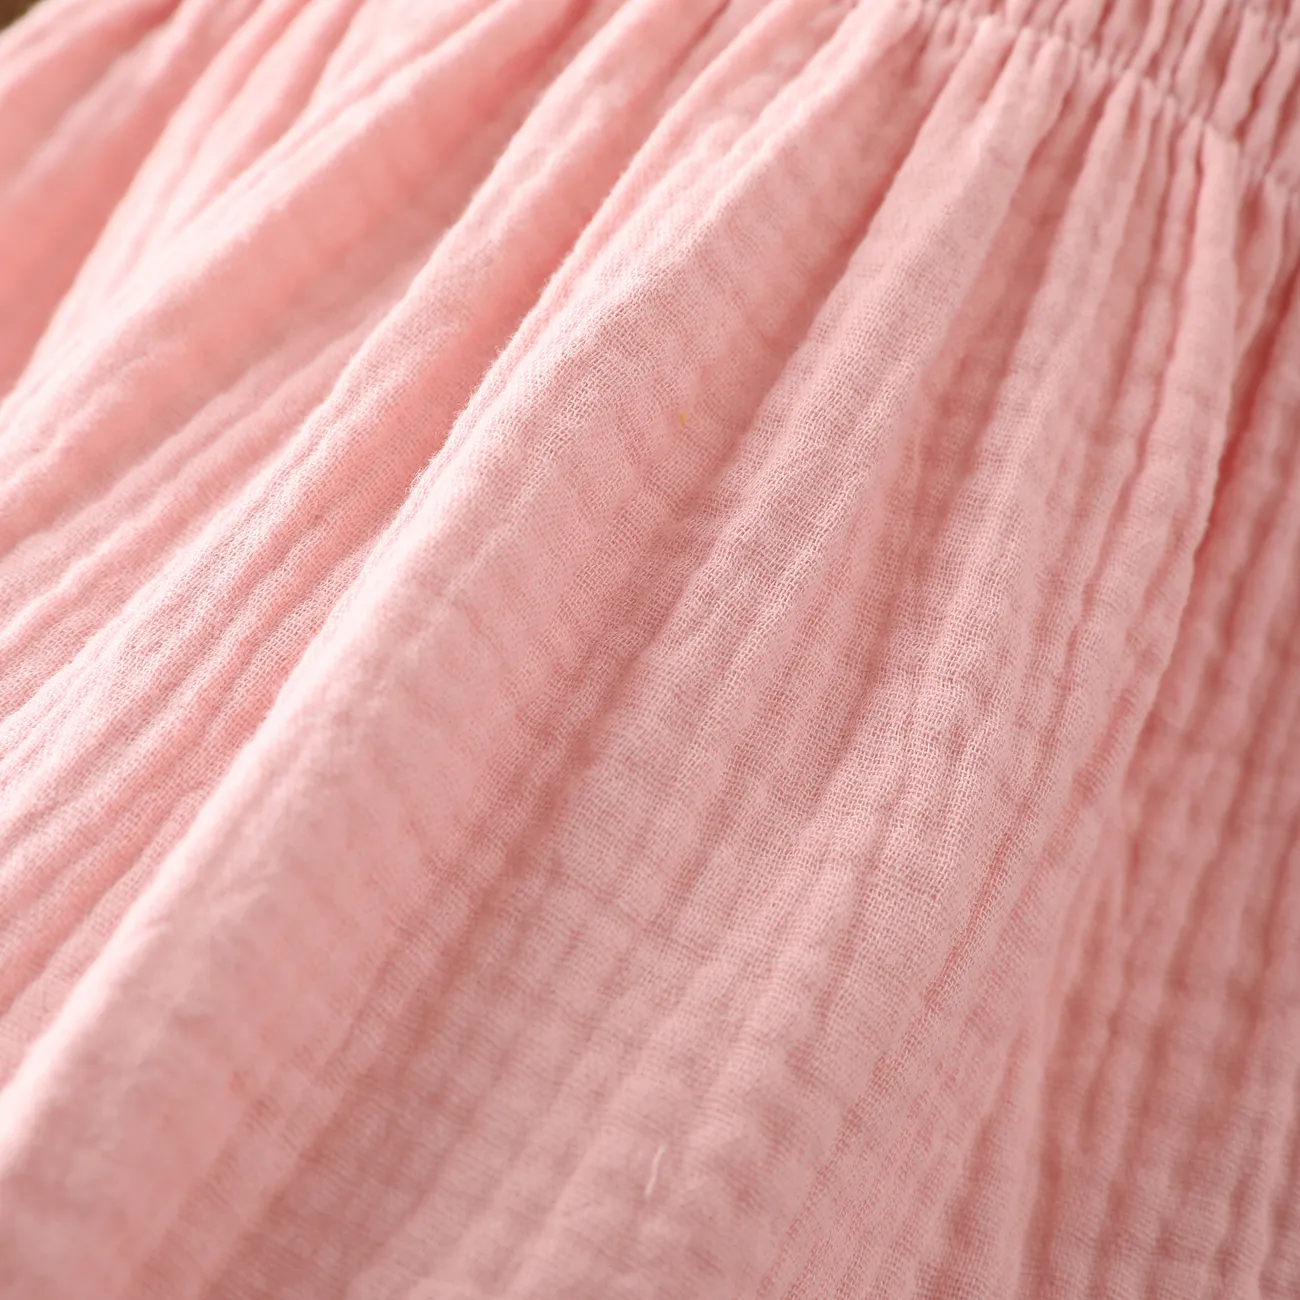 Baby Girls Casual Smocked Pink Cotton Dress  Pink big image 1